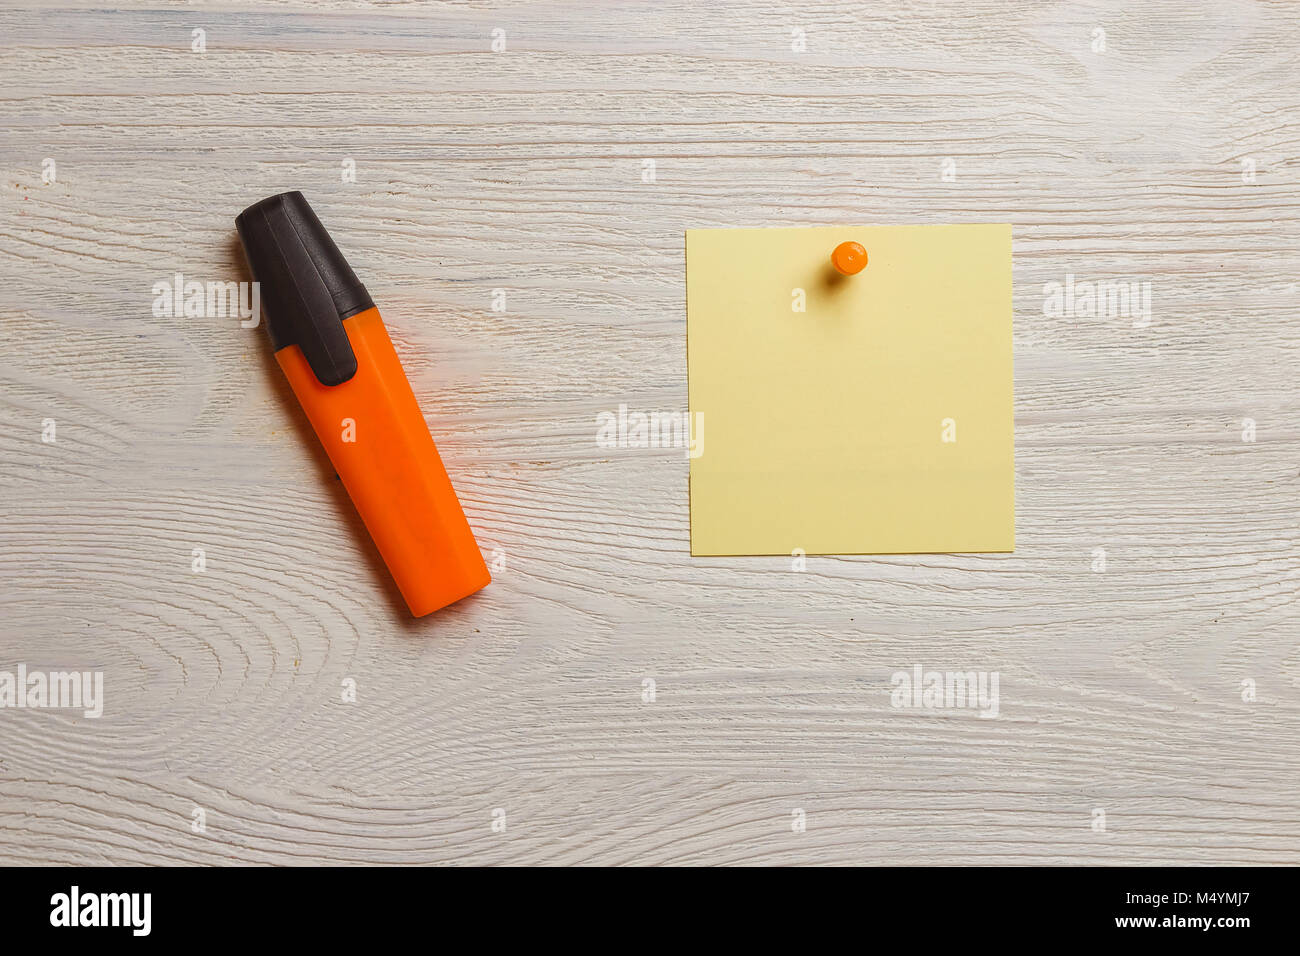 Fermo, fustellato adesivo giallo arancio e puntine, marcatore bianco sulla tavola di legno. Memo, promemoria. Foto Stock